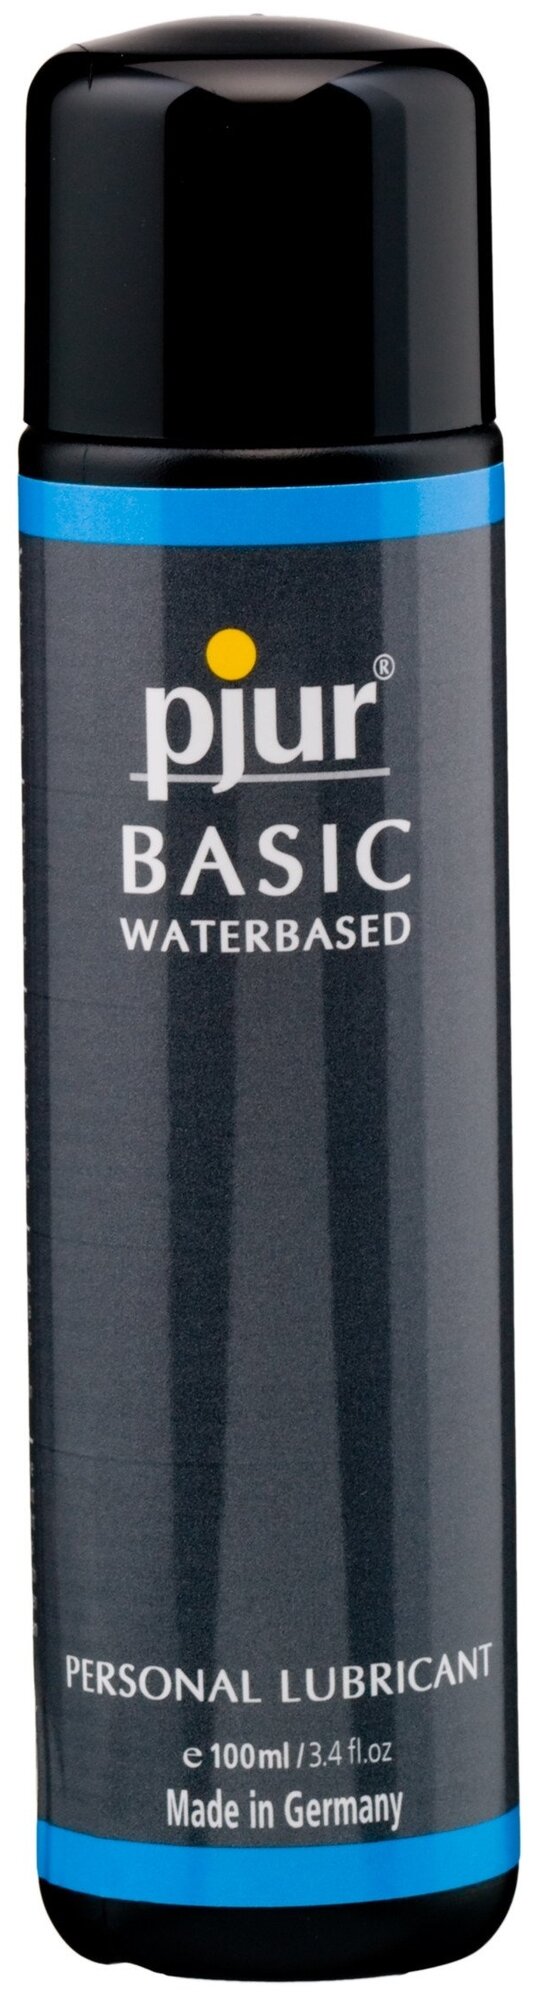 Pjur Basic waterbased